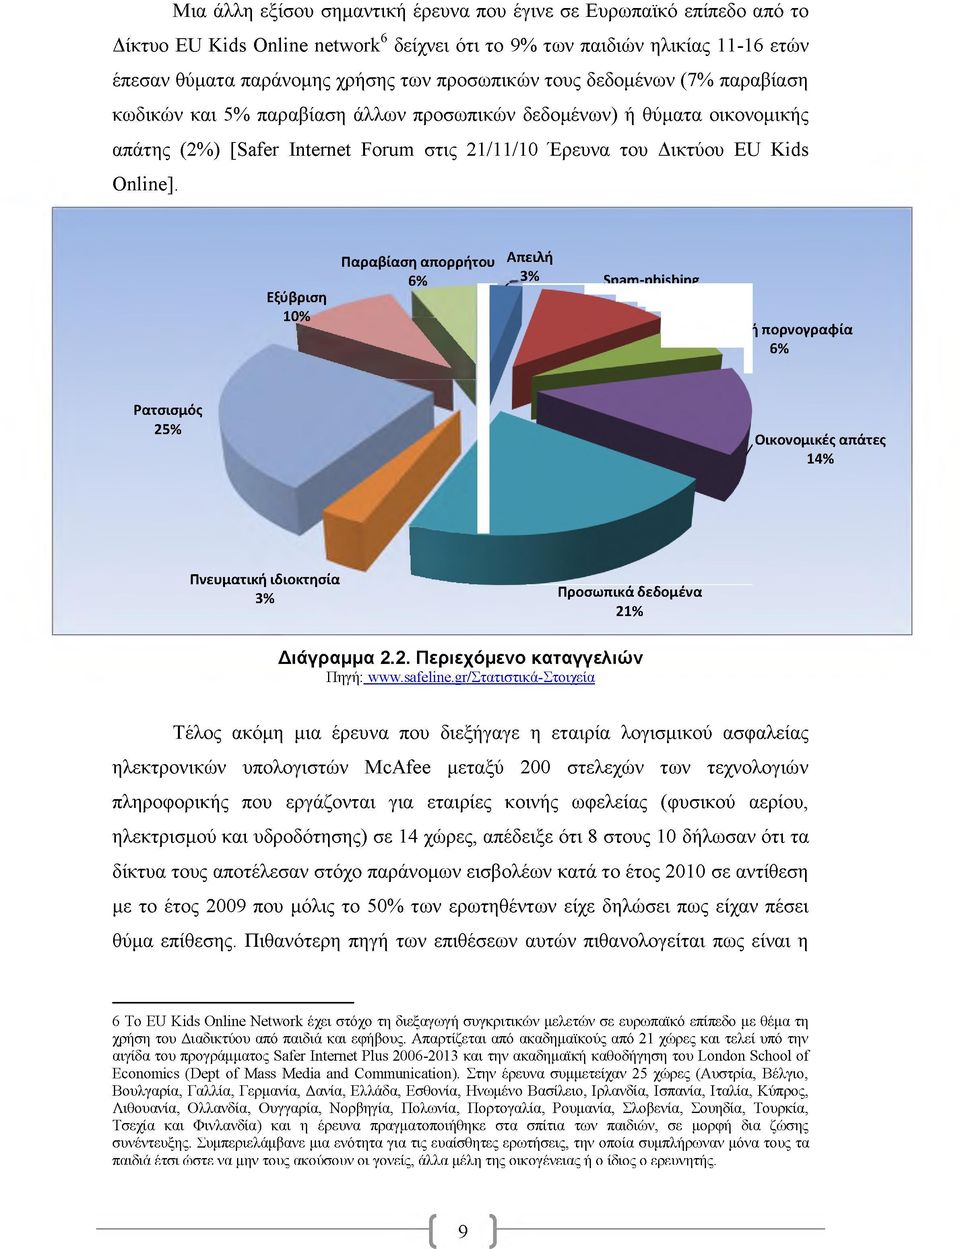 Παραβίαση απορρήτου Απειλή 6% 3% Εξύβριση 10% «O k Spam-phishing 12% Παιδική πορνογραφία 6% Ρατσισμός 25%.. «Πνευματική ιδιοκτησία 3% Προσωπικά δεδομένα 21% Οικονομικές απάτες 14% Διάγραμμα 2.2. Περιεχόμενο καταγγελιών Πηγή: www.